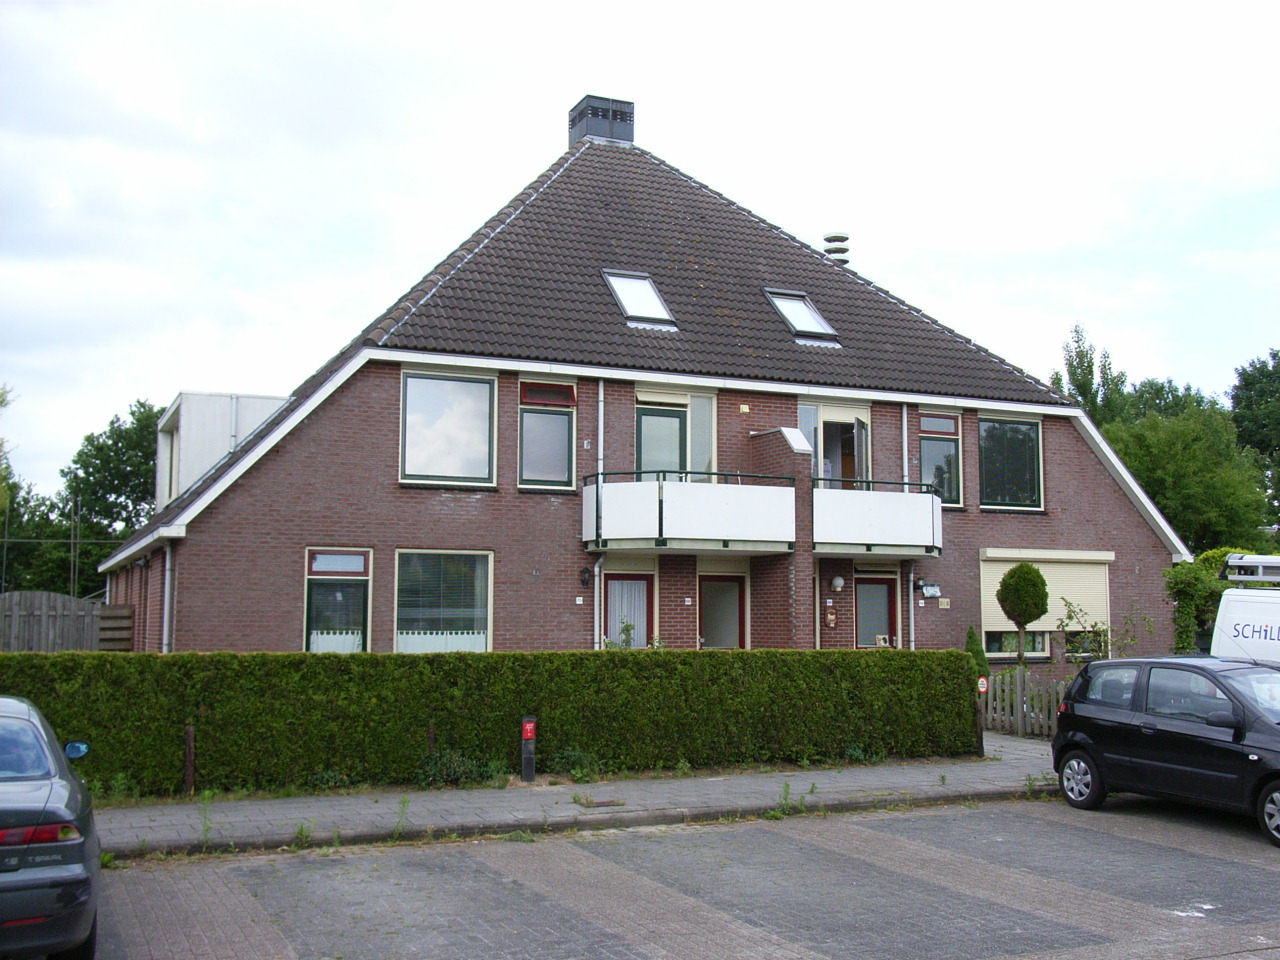 Borgstukken 72, 9761 LB Eelde, Nederland